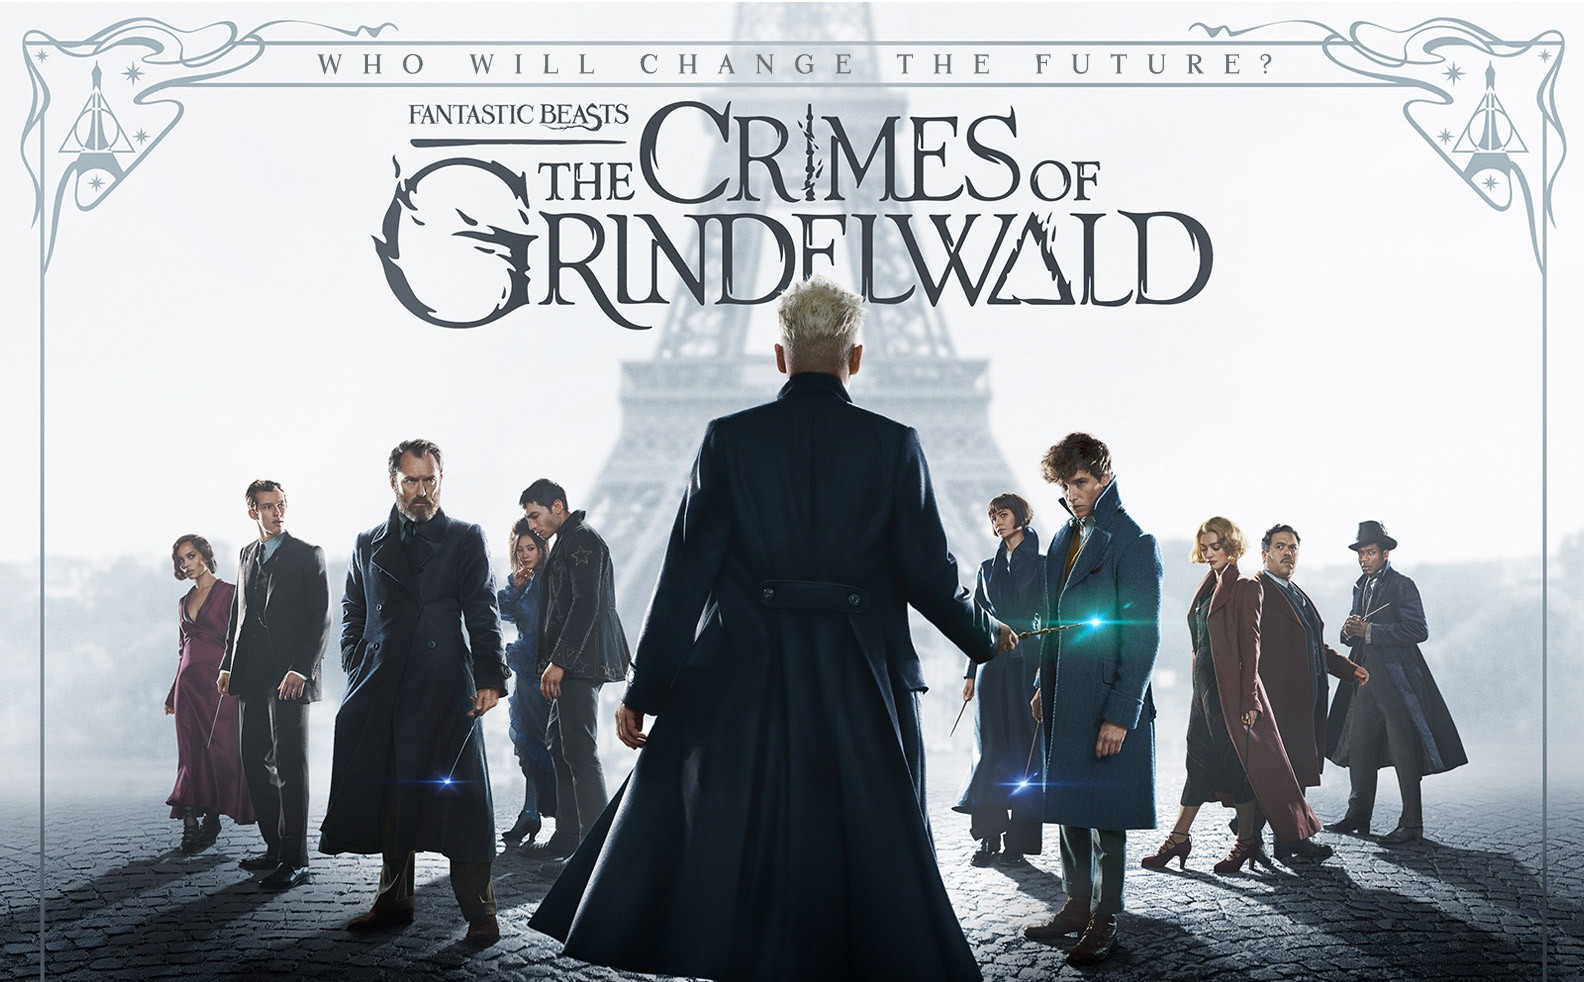 بررسی دنباله فیلم جانوران شگفت انگیز با حضور جانی دپ / Fantastic Beasts: The Crimes of Grindelwald